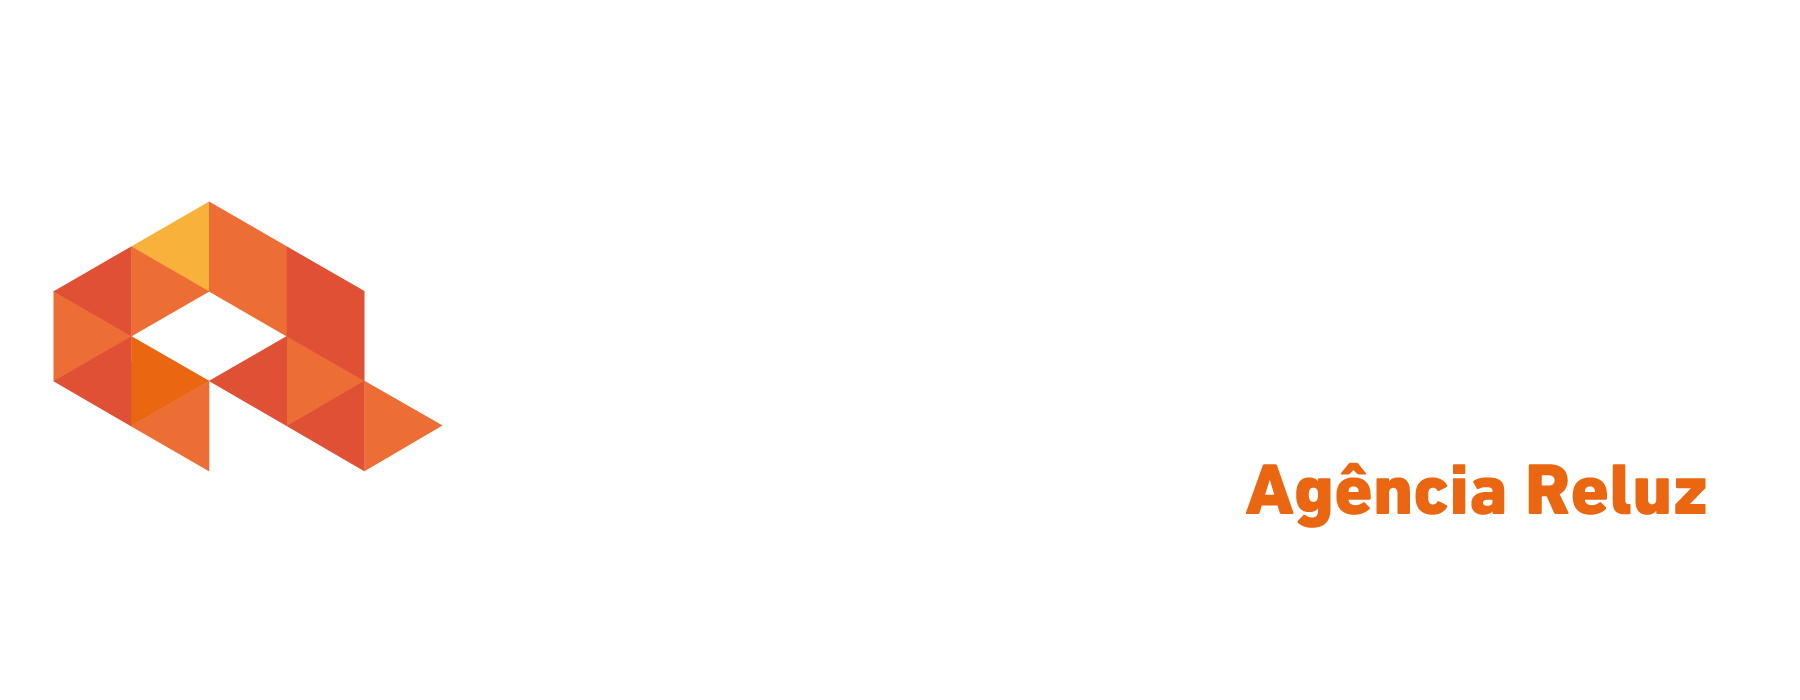 Logo crédito real Crédito Real Reluz